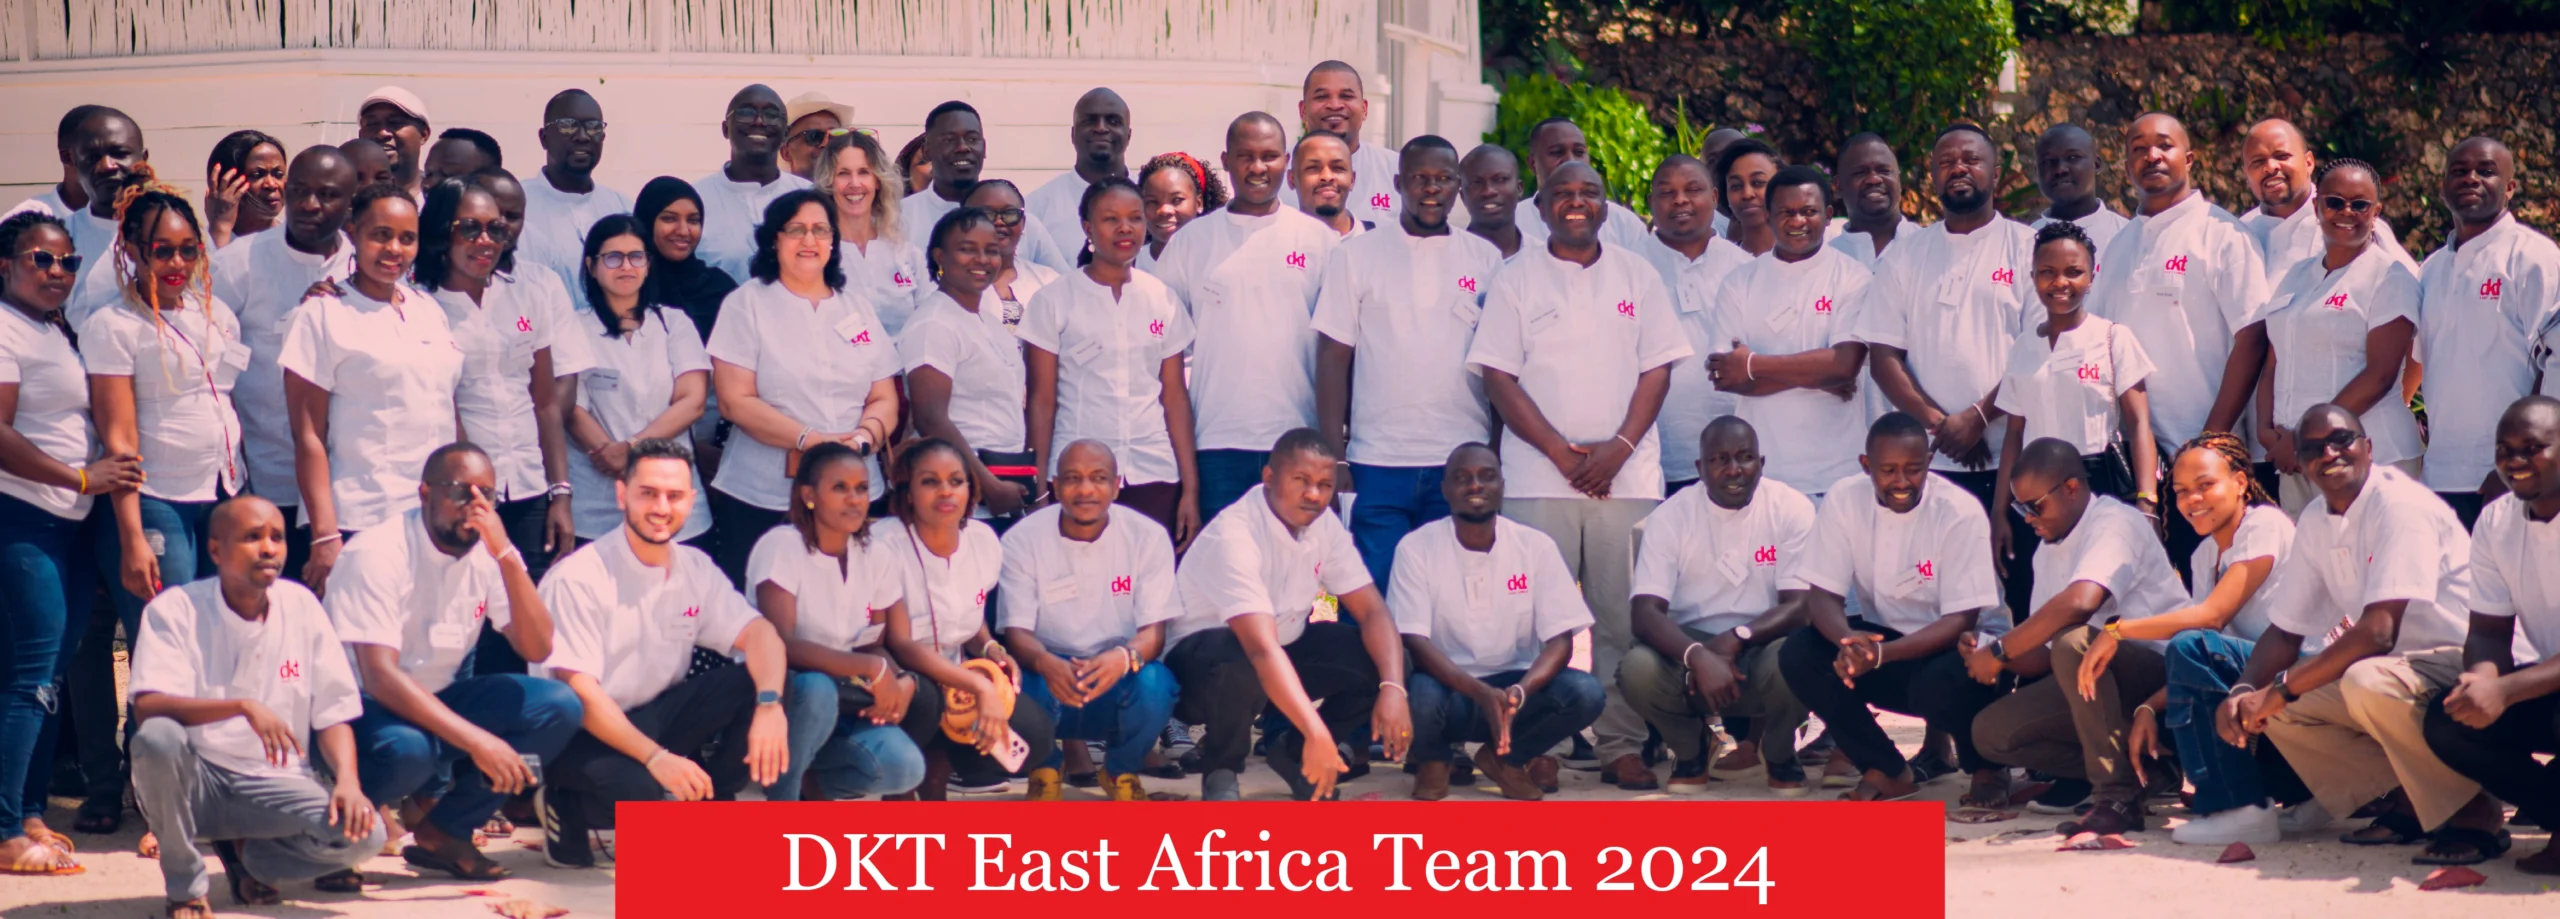 DKT East Africa Team